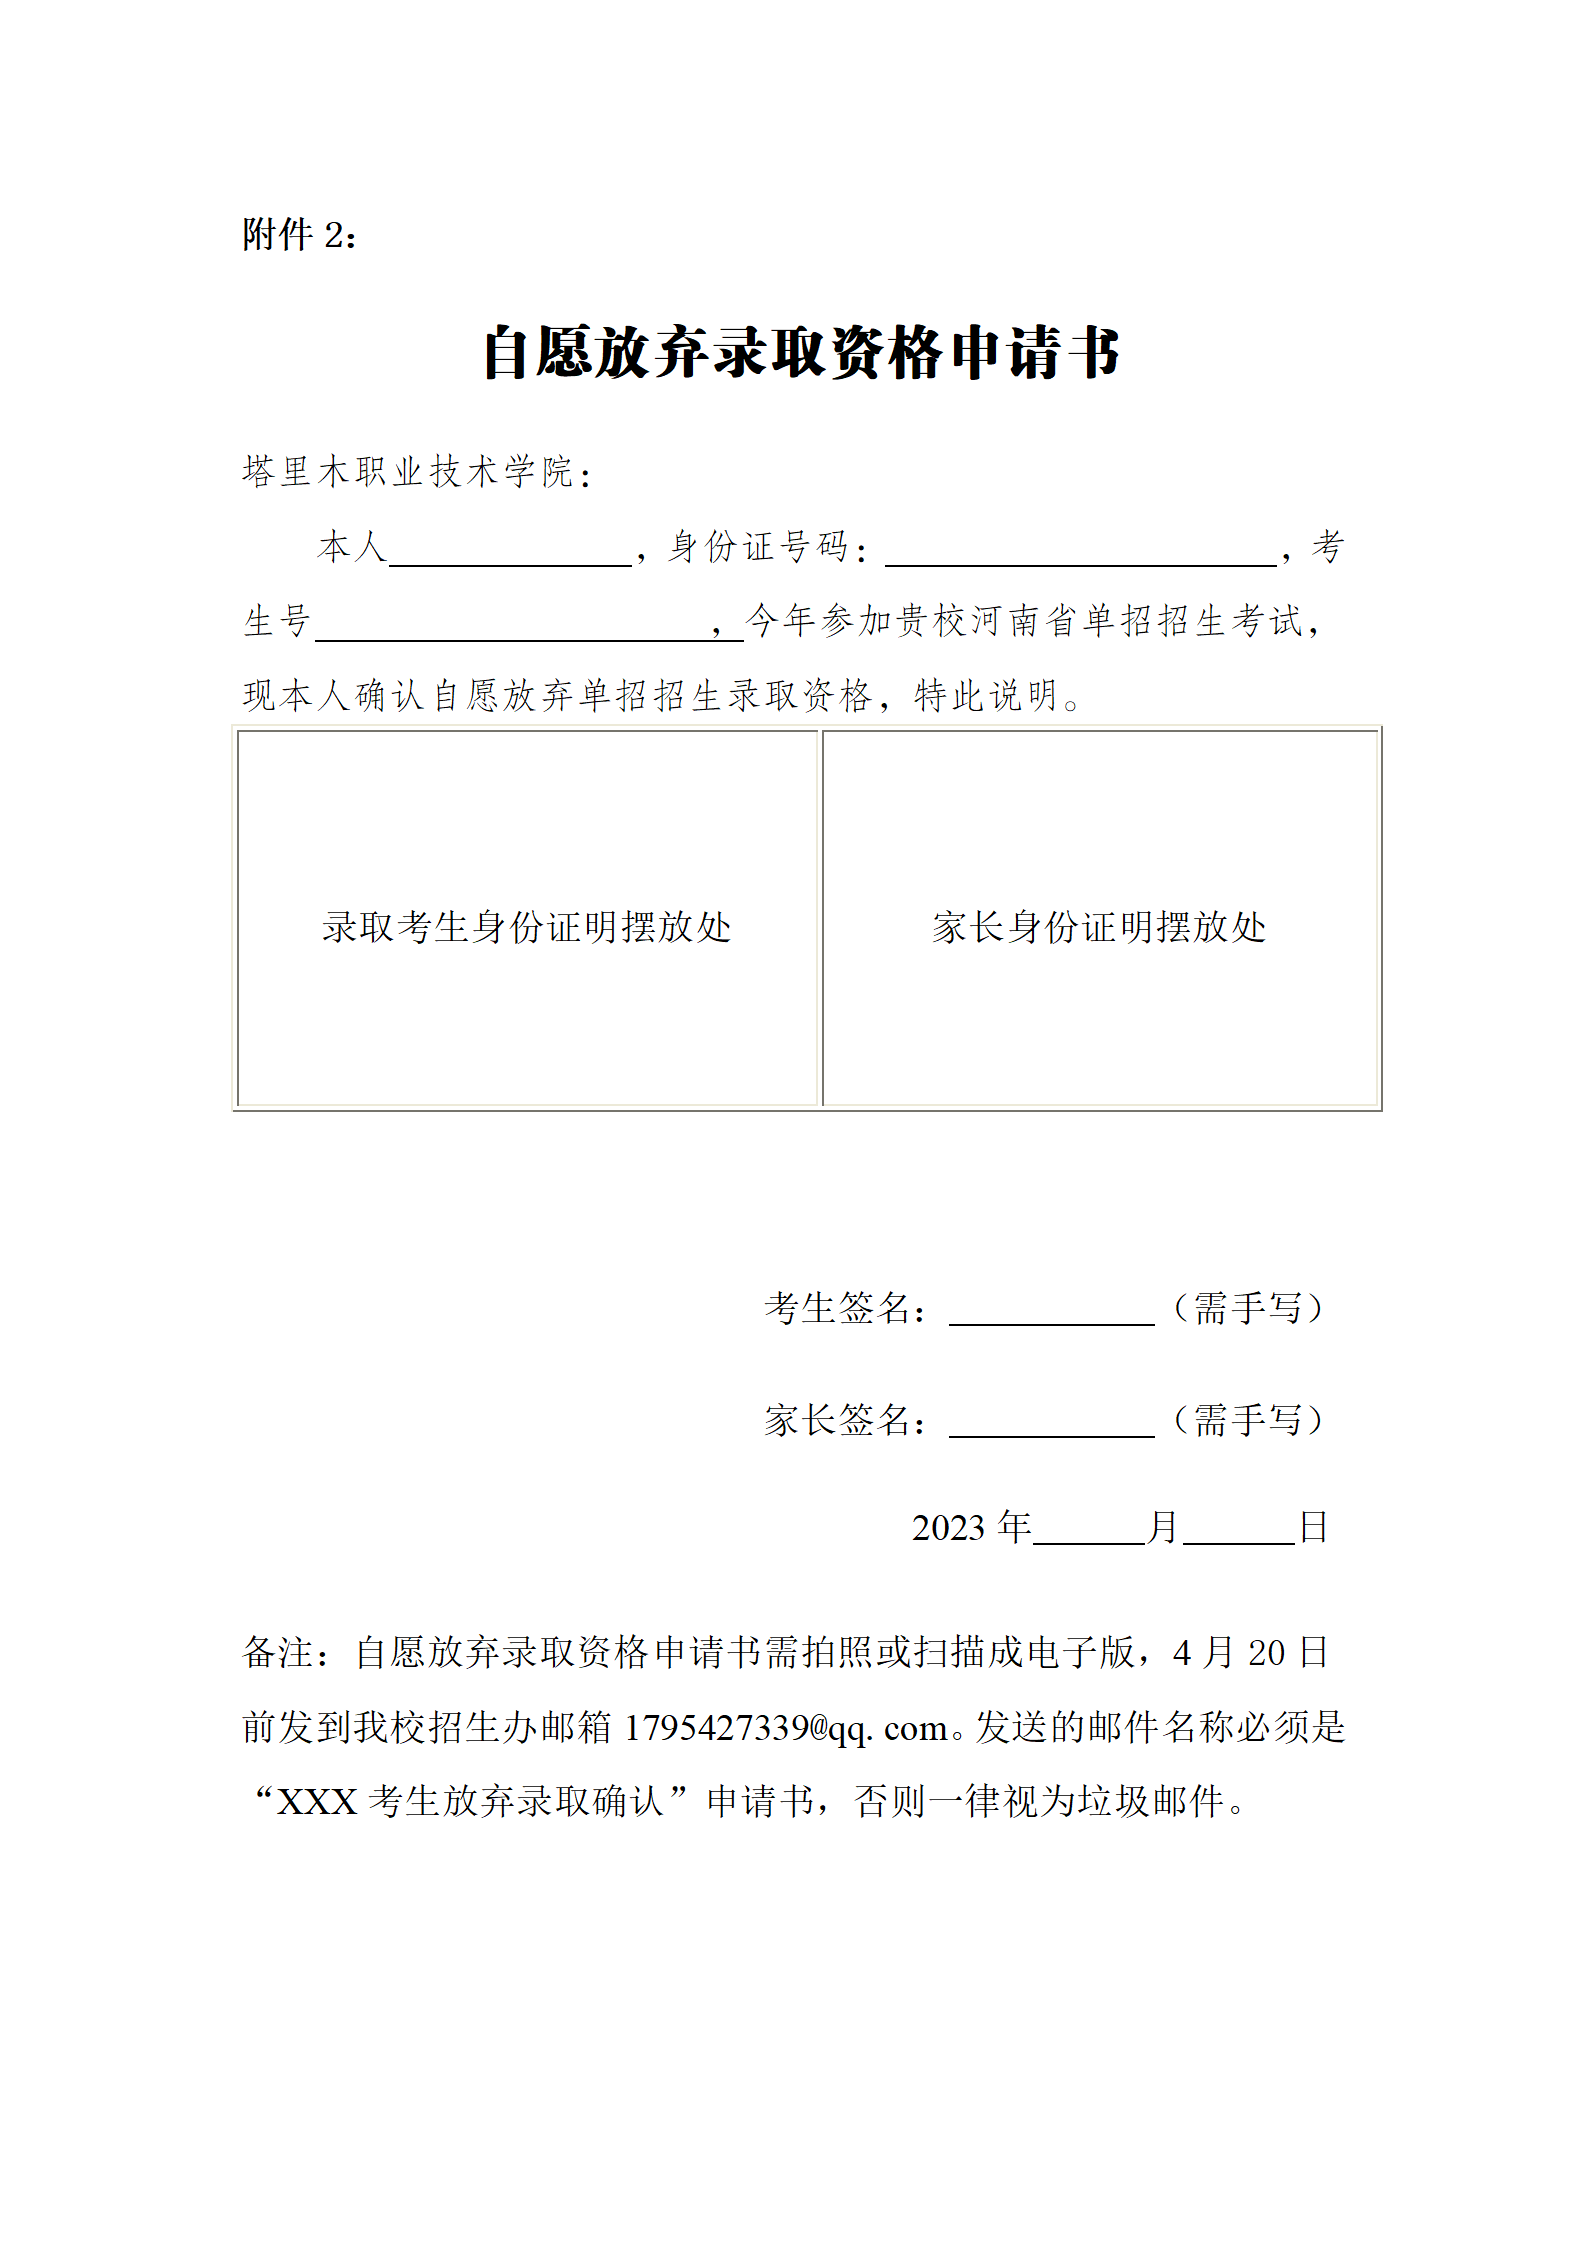 塔里木职业技术学院2023年河南省高职单独考试招生拟录取名单公示_09.png